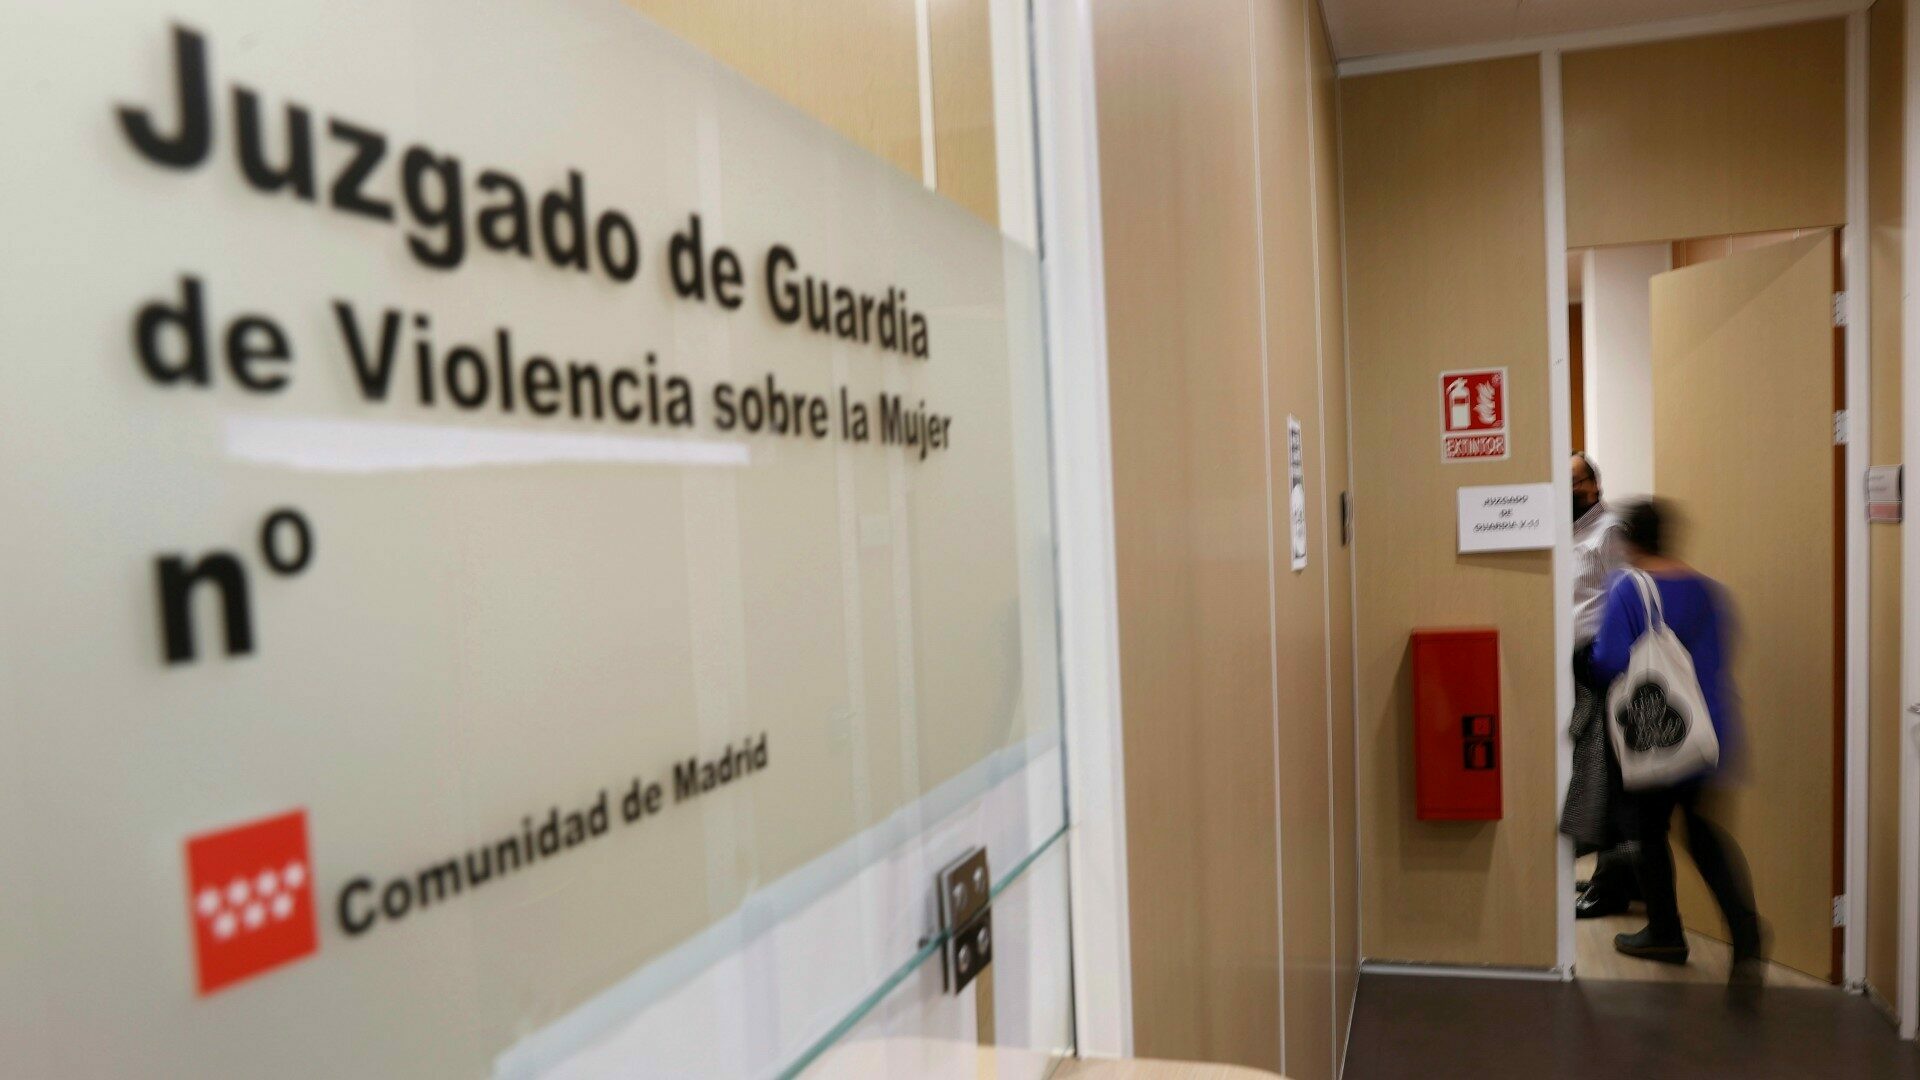 Un juzgado de Violencia sobre la Mujer de la Comunidad de Madrid